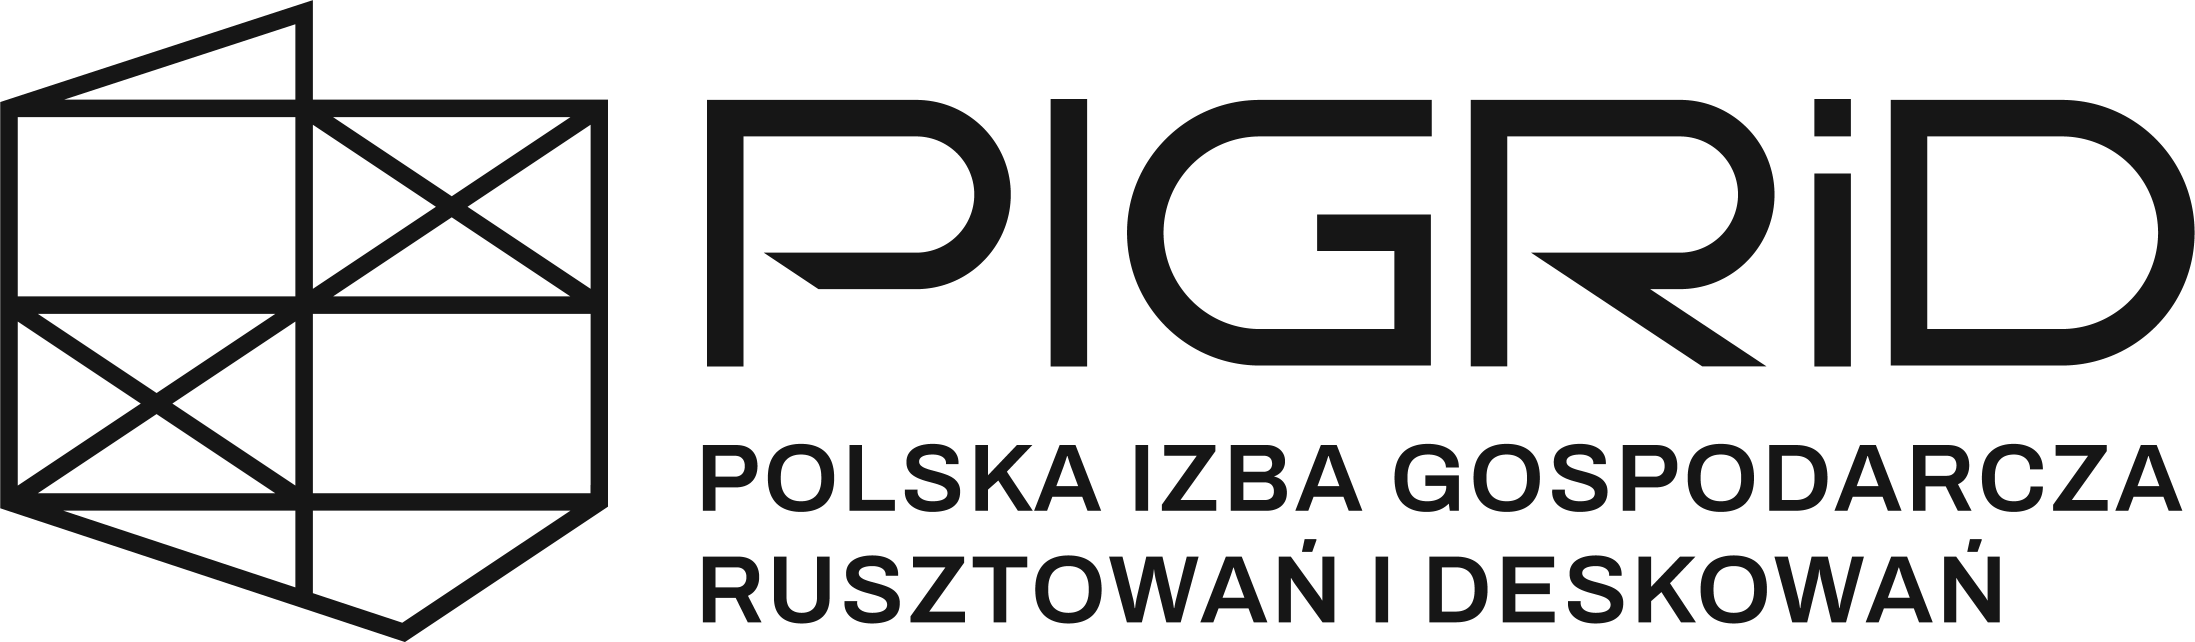 PIGRiD - Polska Izba Gospodarcza Rusztowań i Deskowań